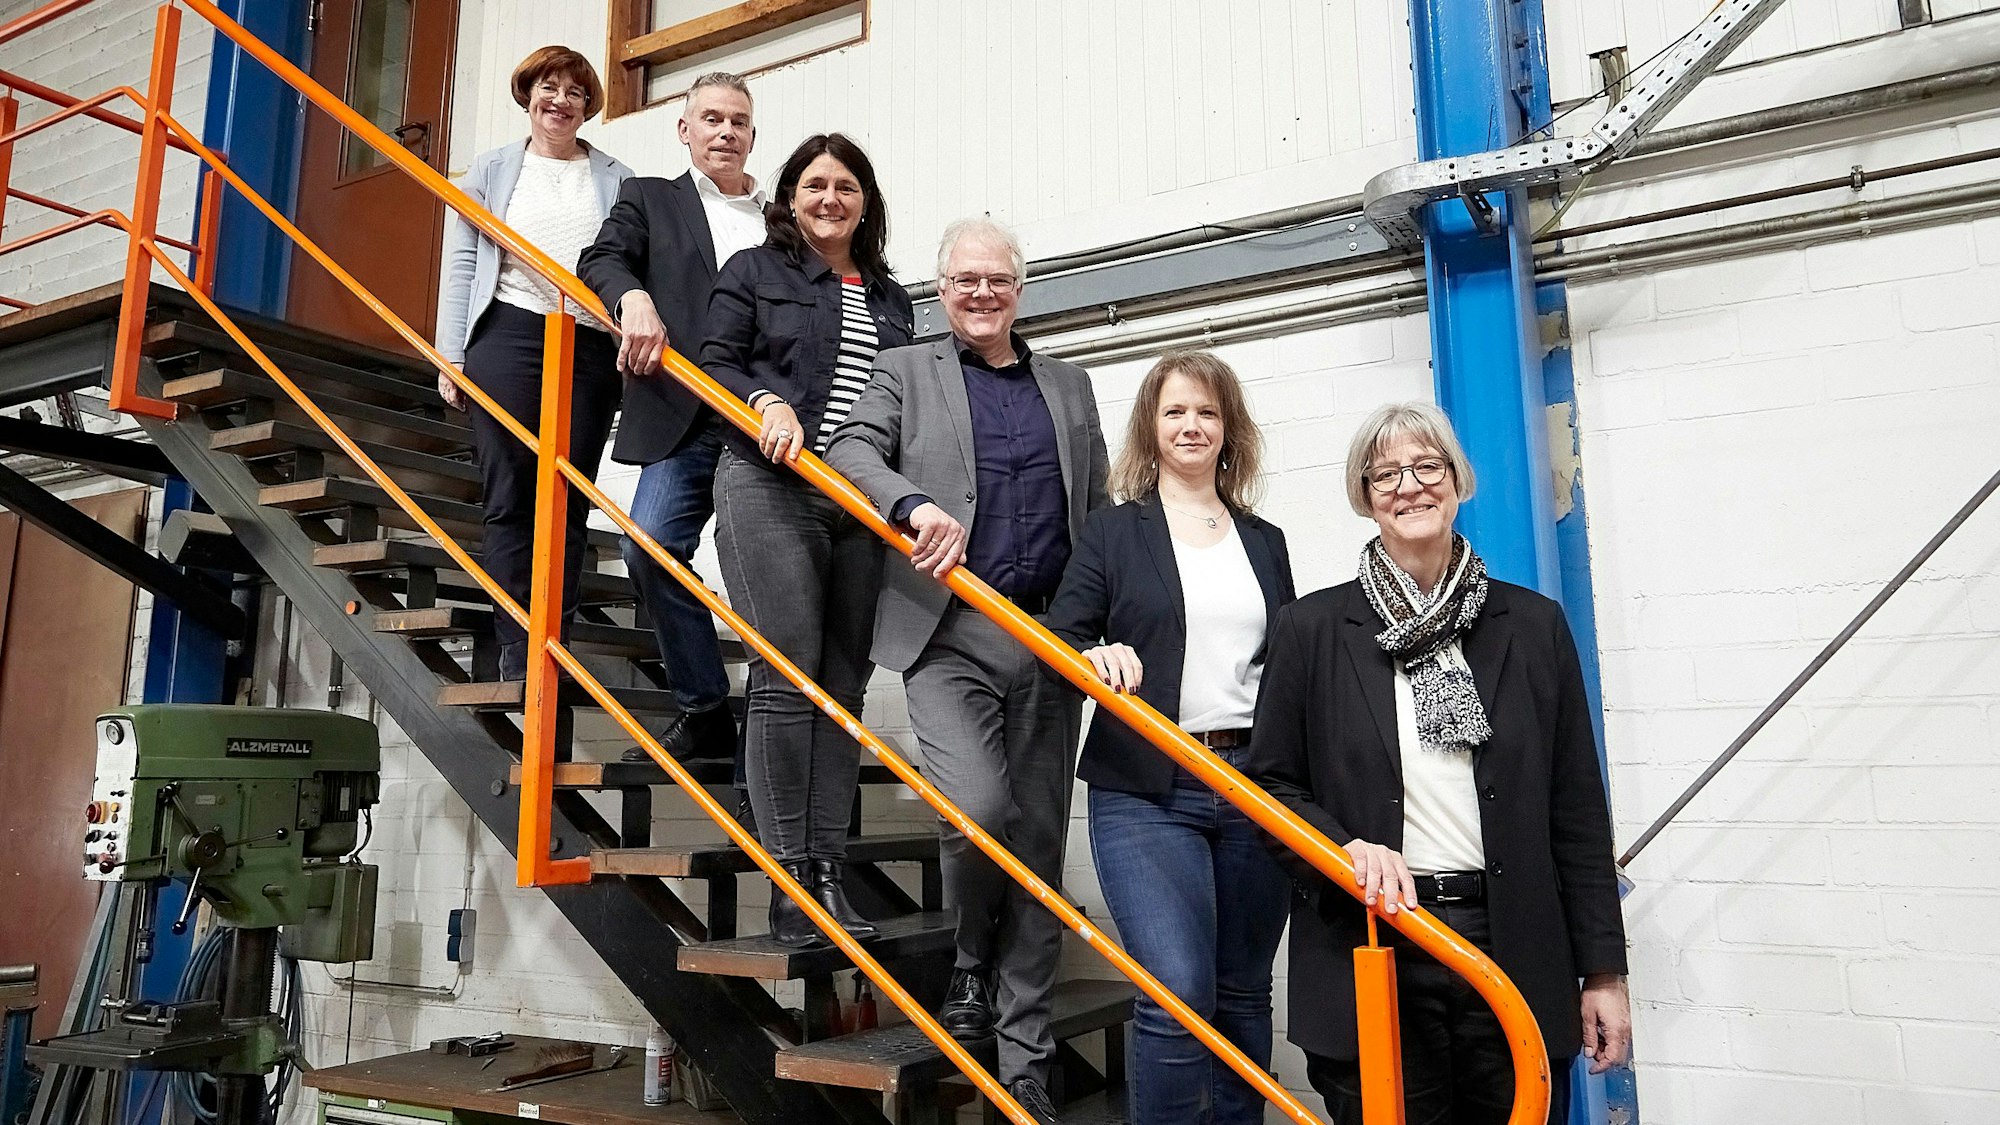 Vier Frauen und sechs Männer stehen in einer Produktionshalle auf einer Treppe. Die meisten legen eine Hand auf das orangefarbene Geländer.